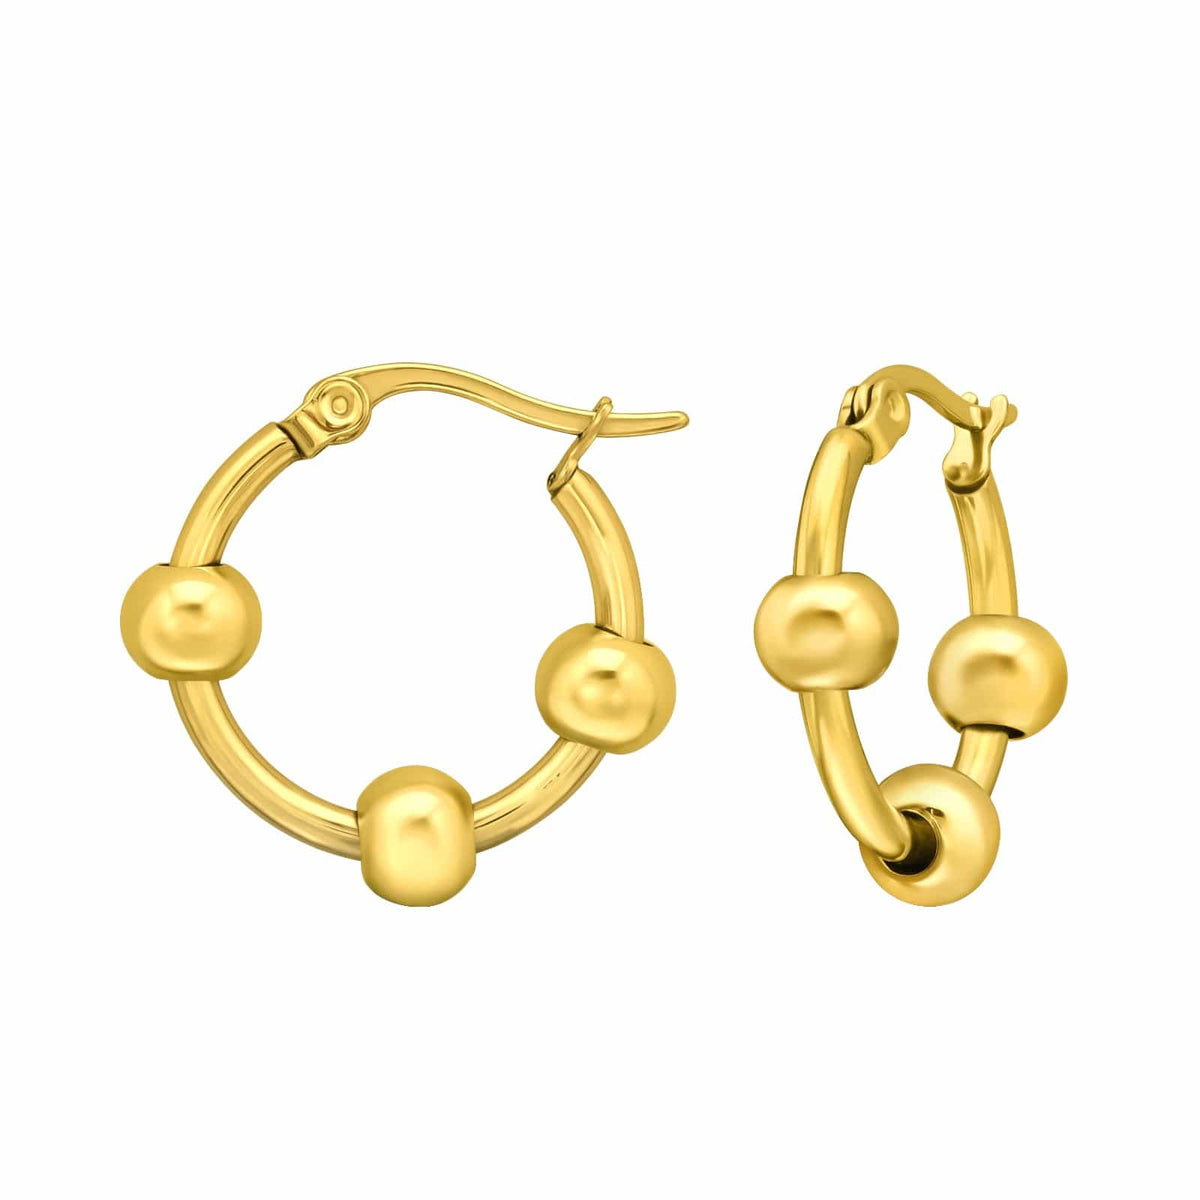 20mm Gold Steel Hoop earrings